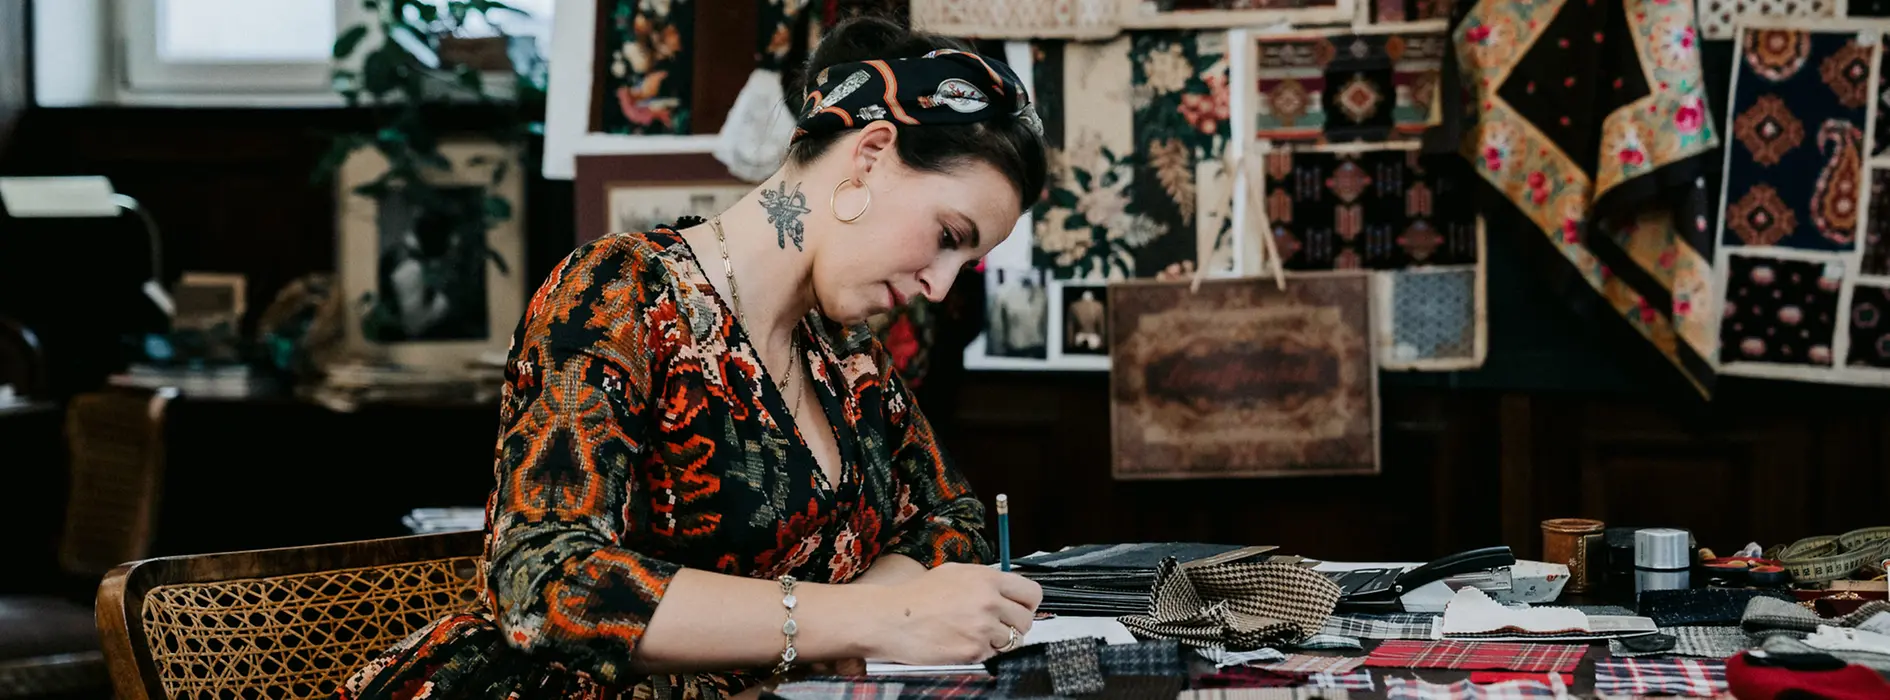 La styliste Lena Hoschek dans sa boutique